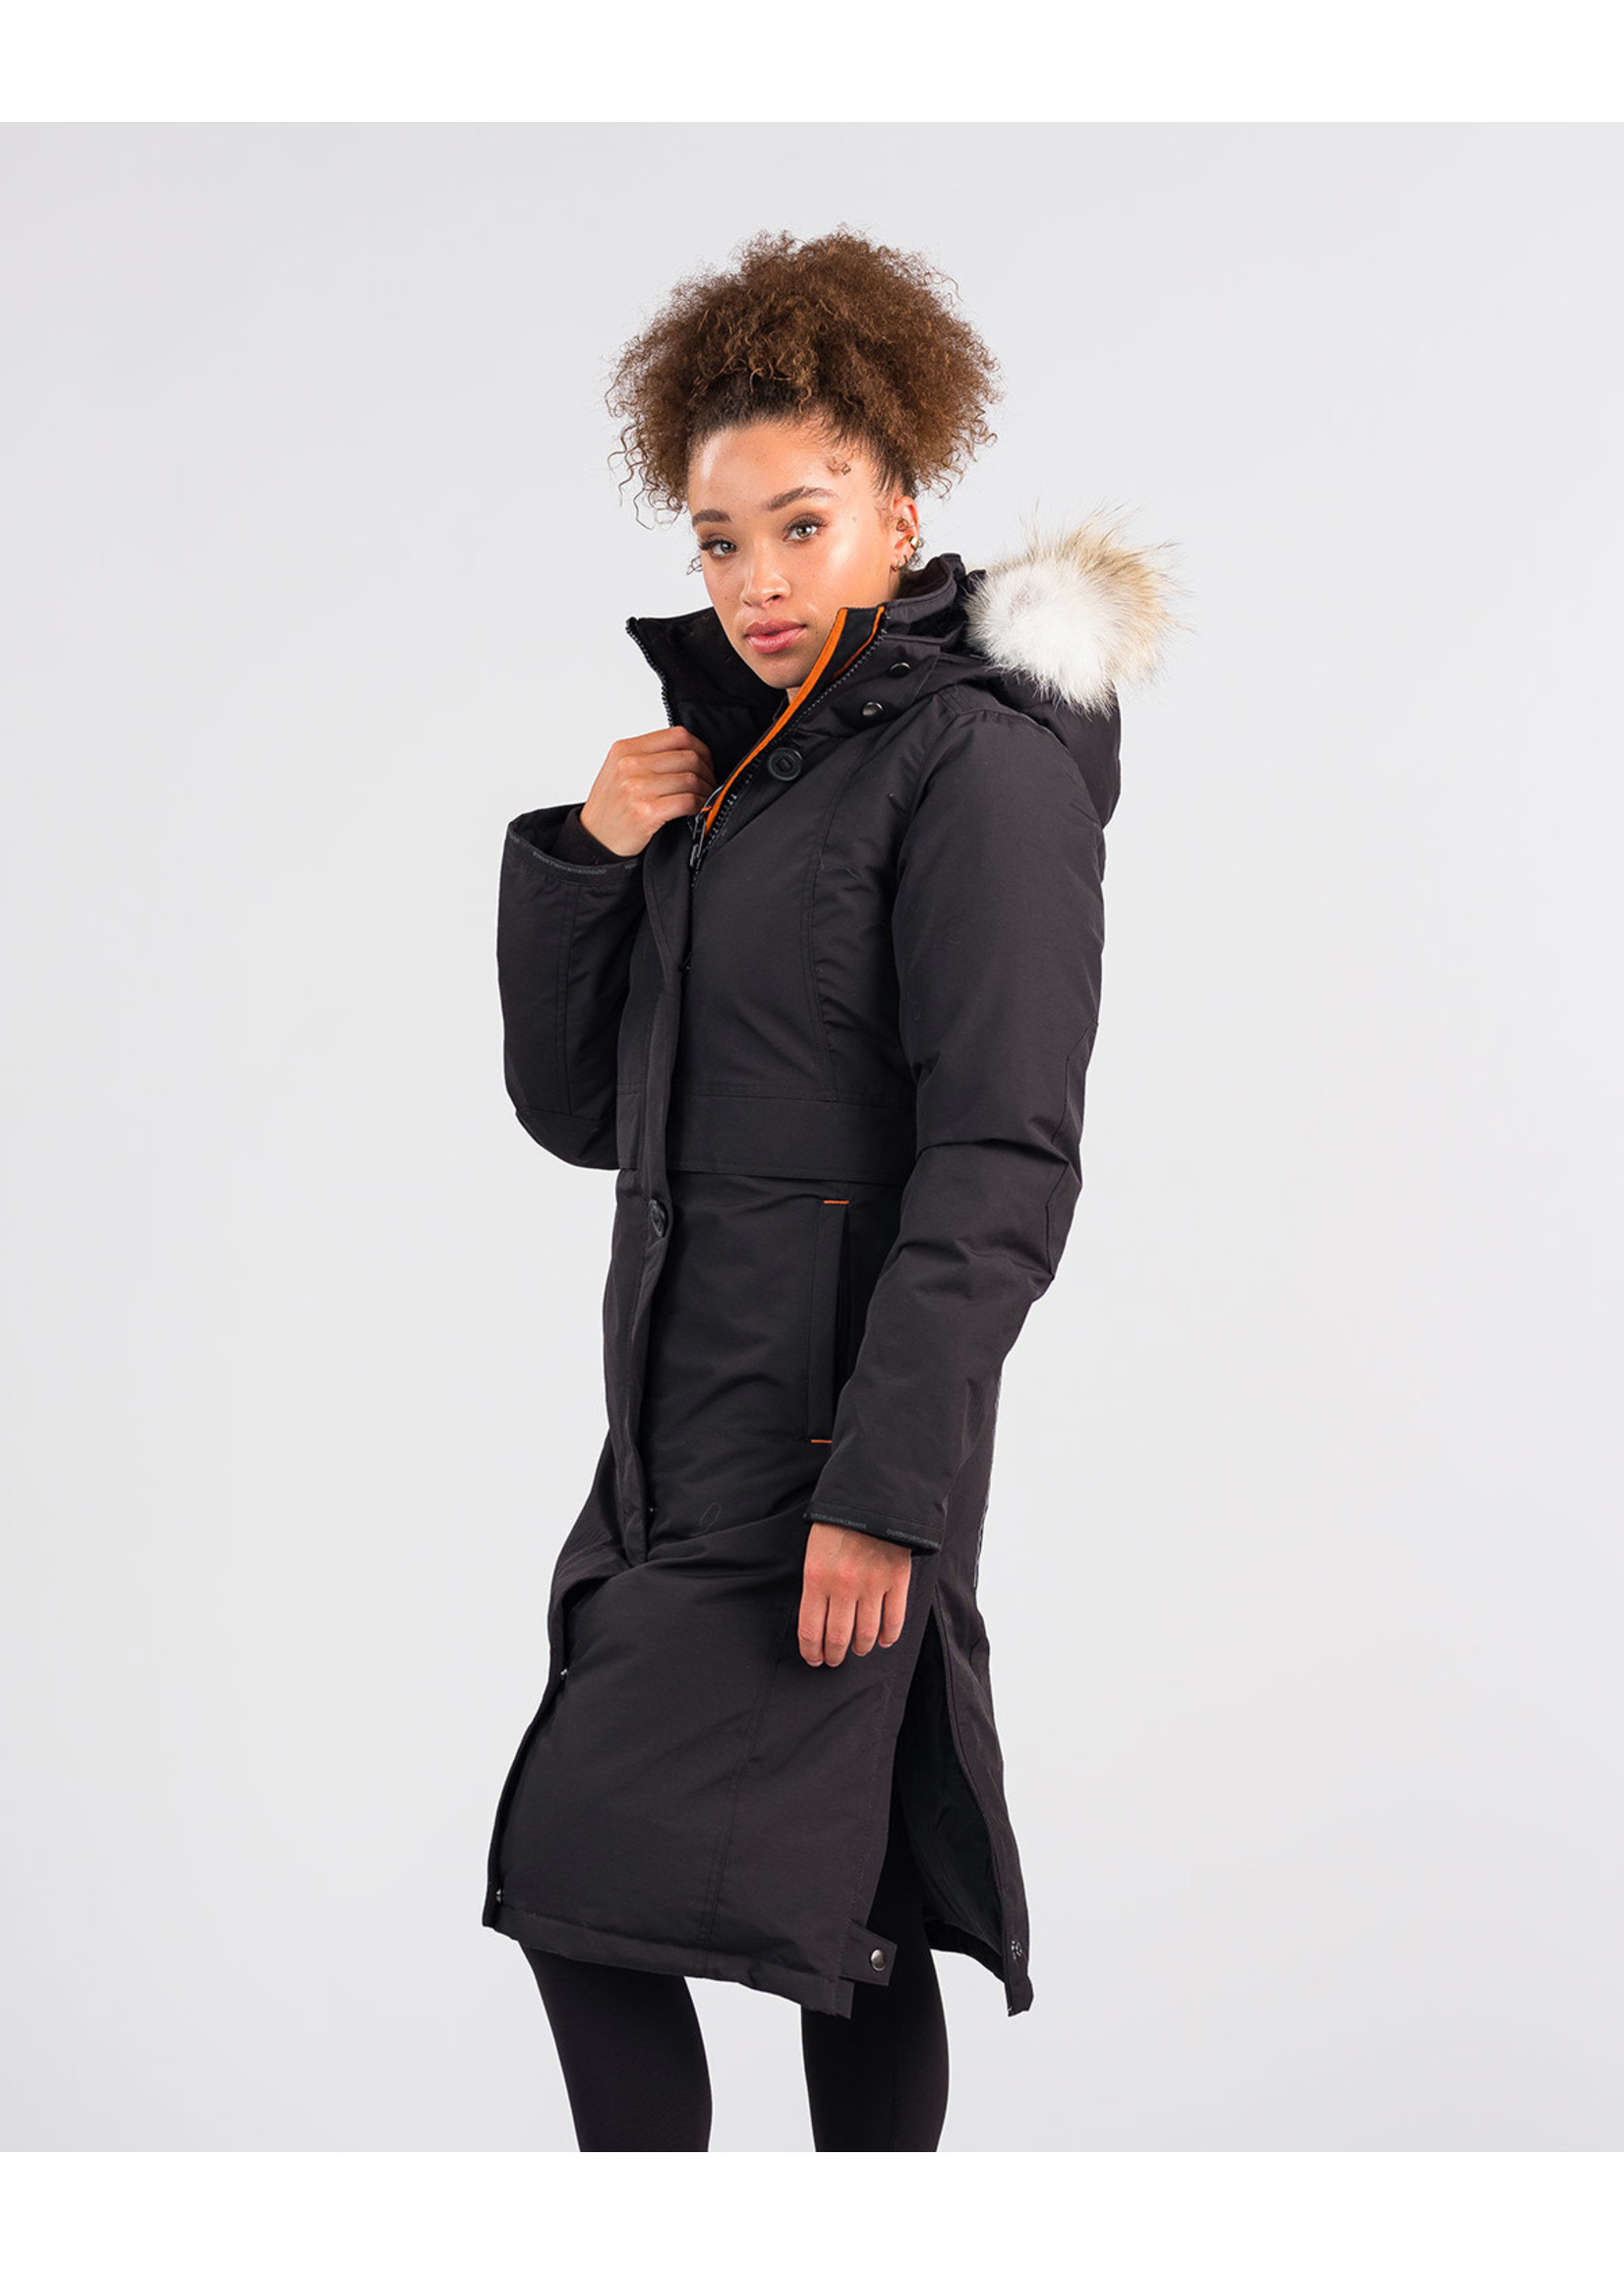 Outdoor Survival Canada Nuaja (Manteau femme) | rabais de 30% * sur les stocks en magasin